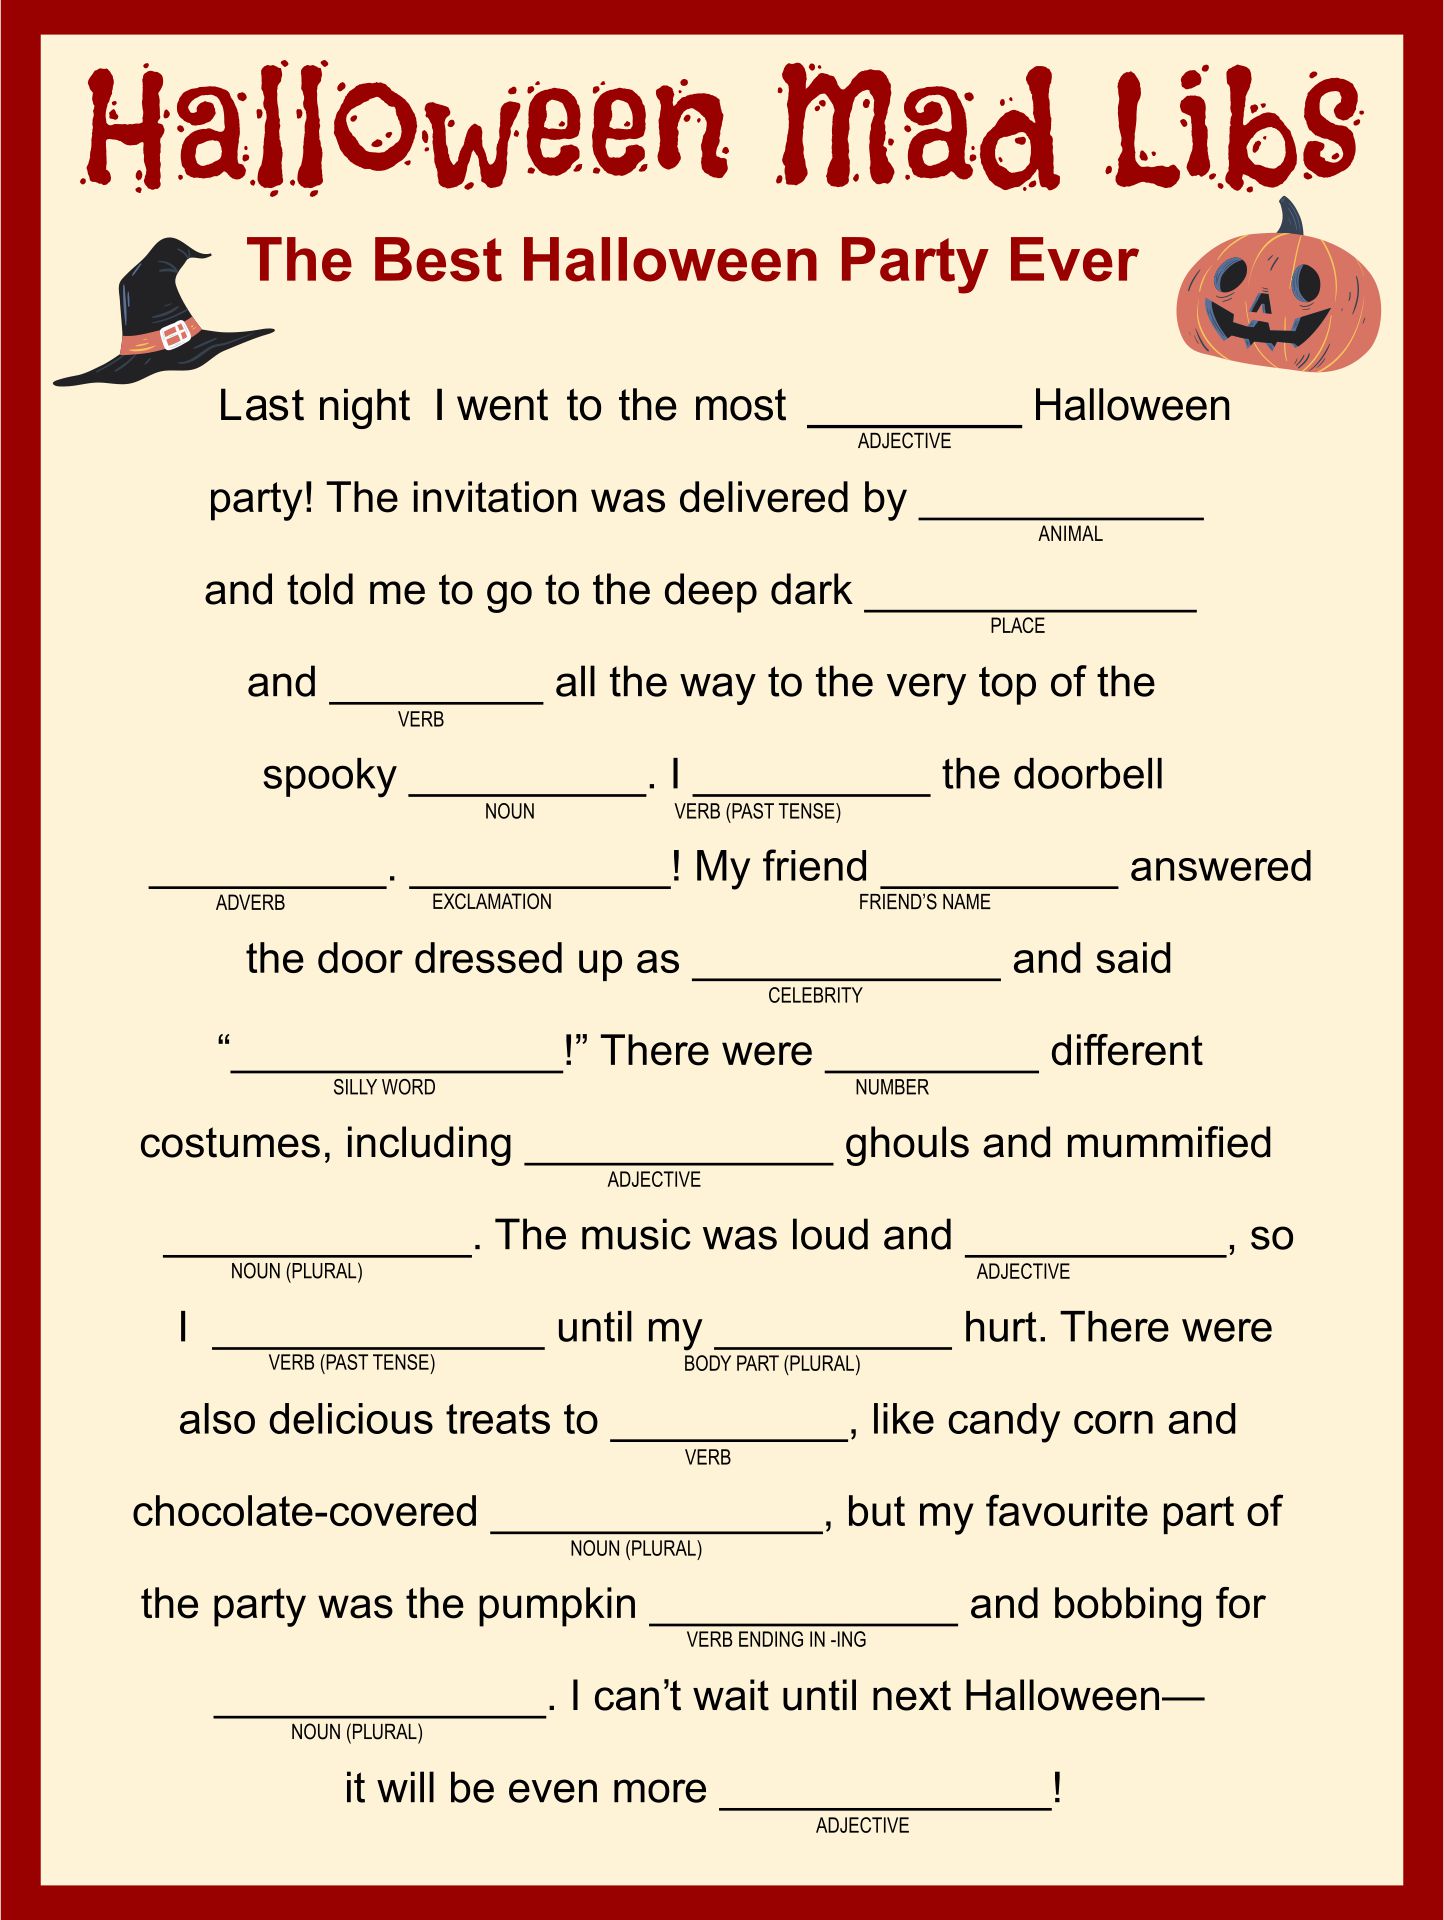 Halloween Mad Libs Story Printable